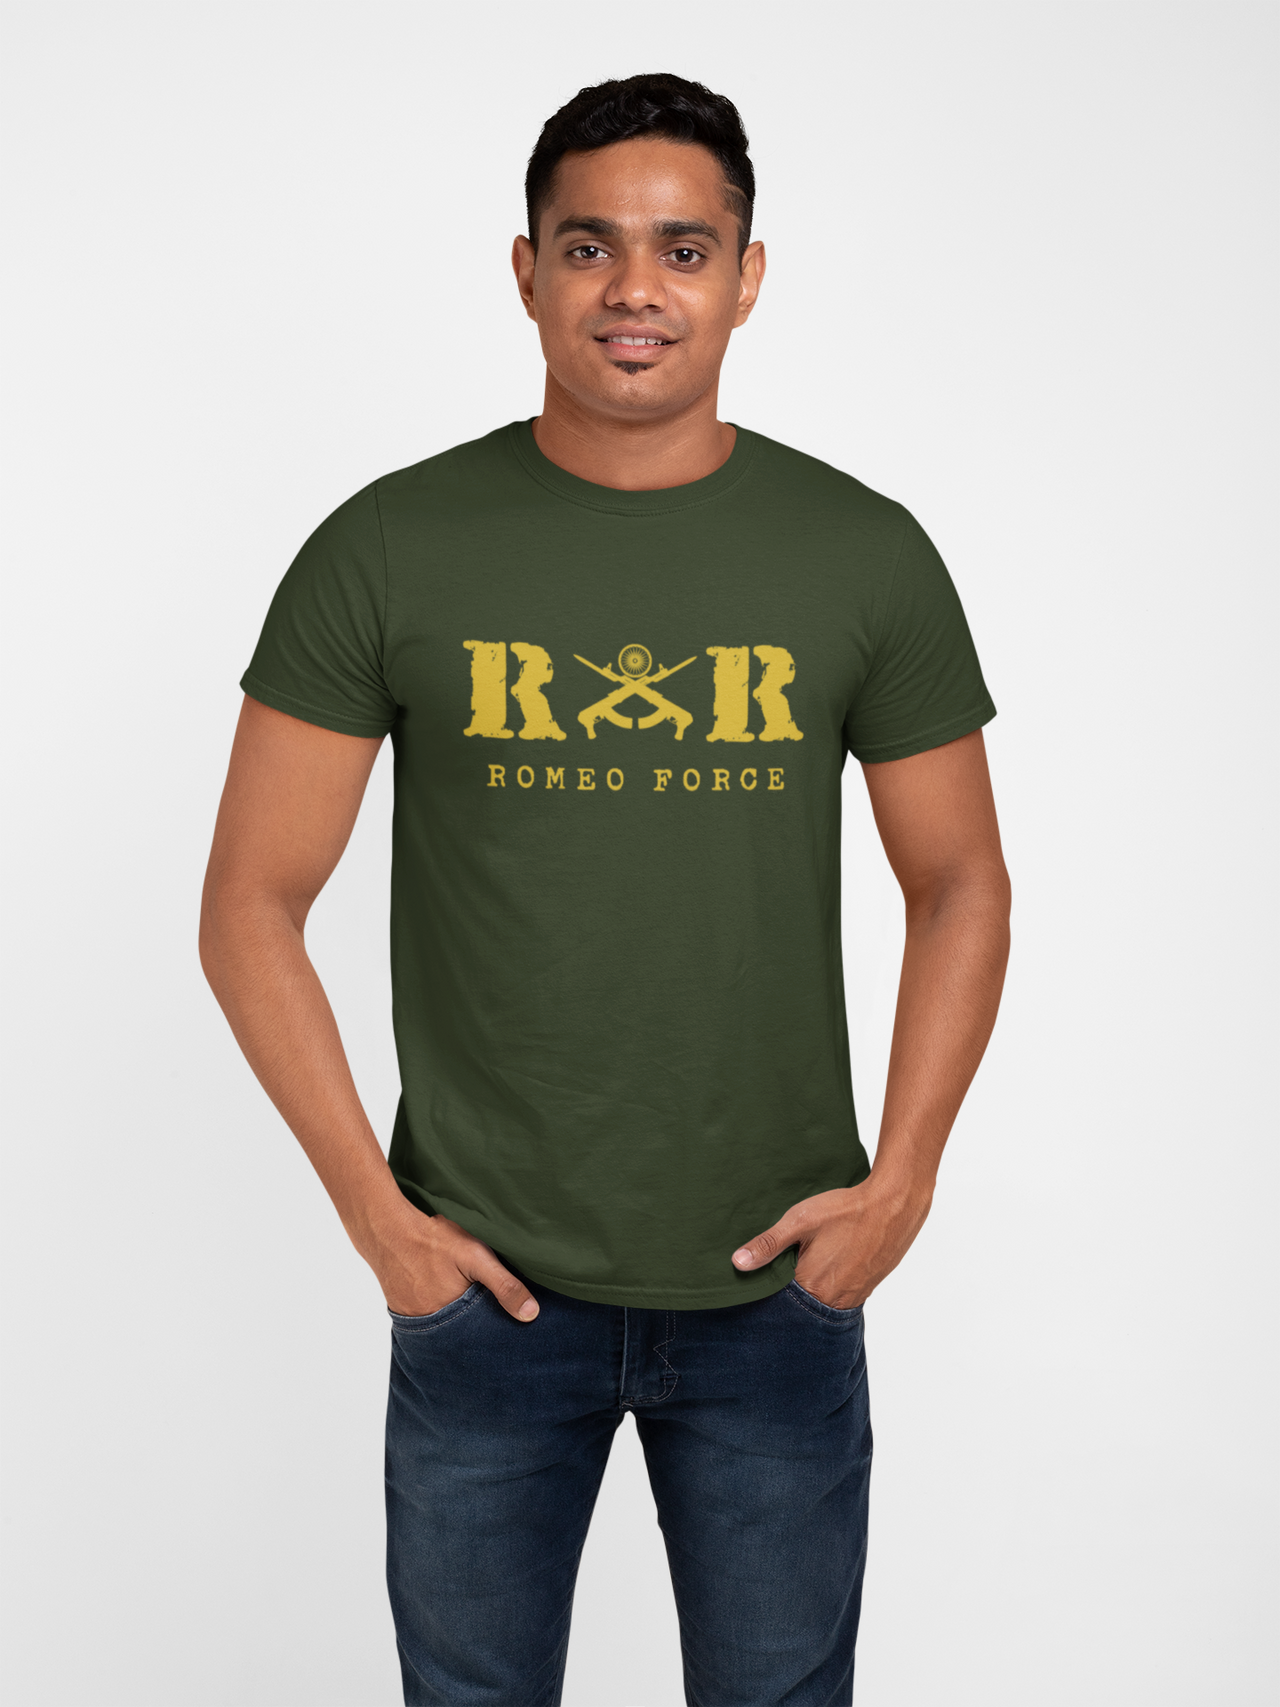 Men's T-shirt Rashtriya Rifles | RR Romeo Force – Olive Planet